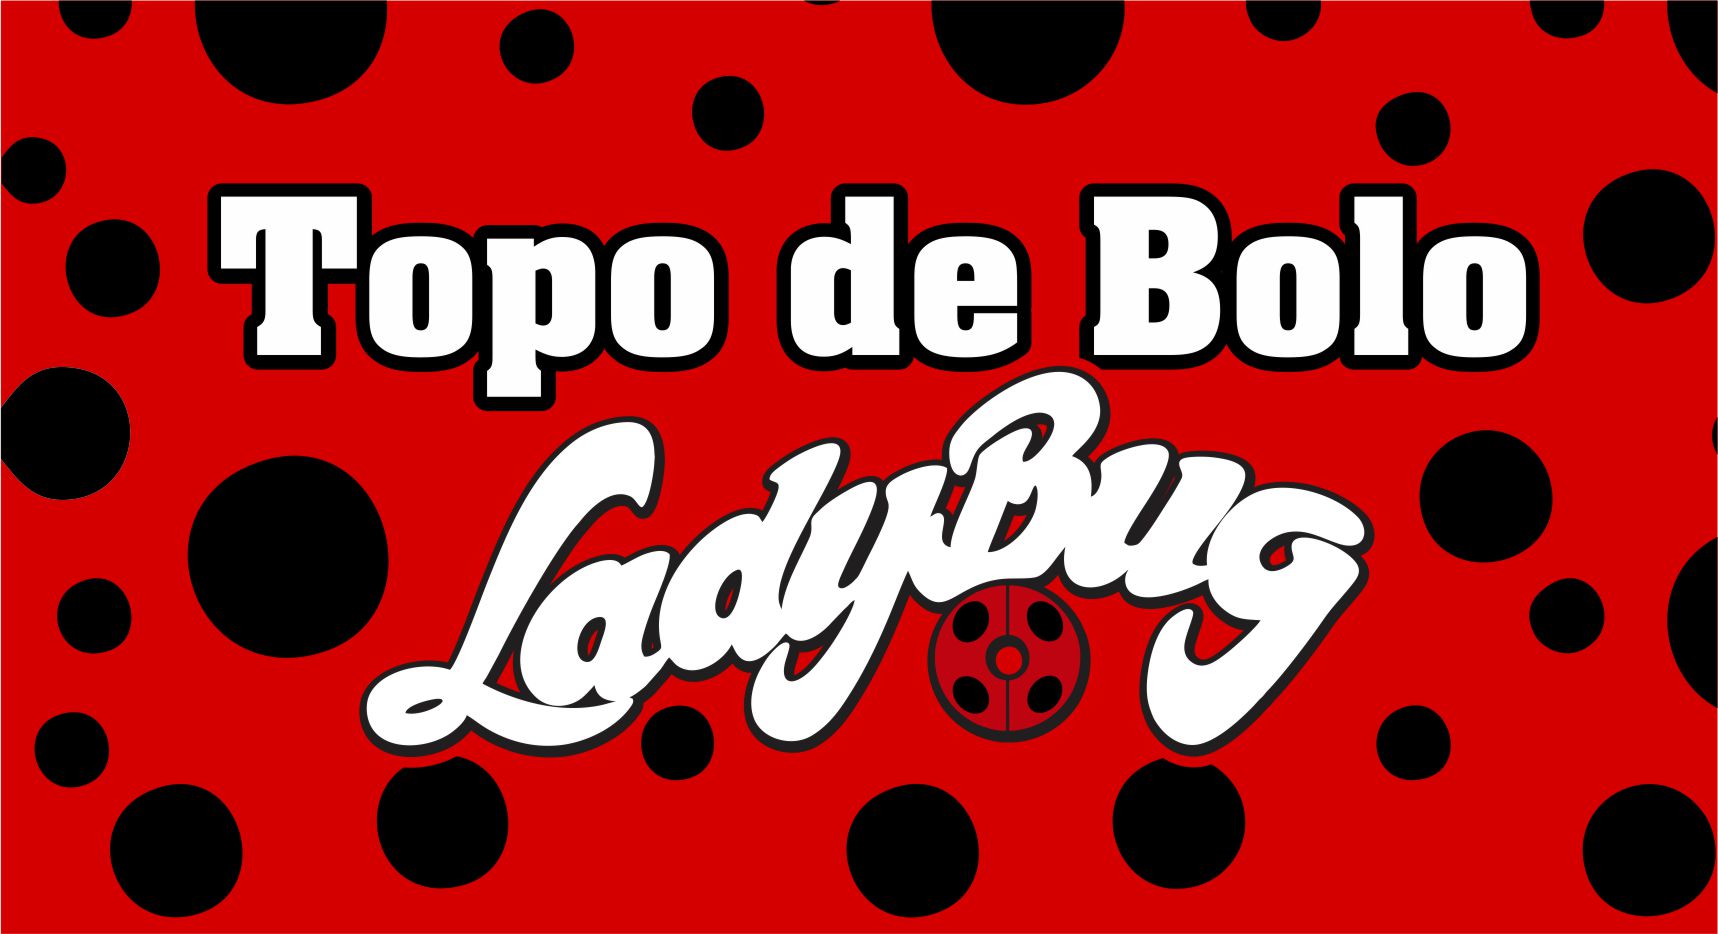 Topo de bolo Ladybug  Topo de bolo ladybug, Topo de bolo, Nomes femininos